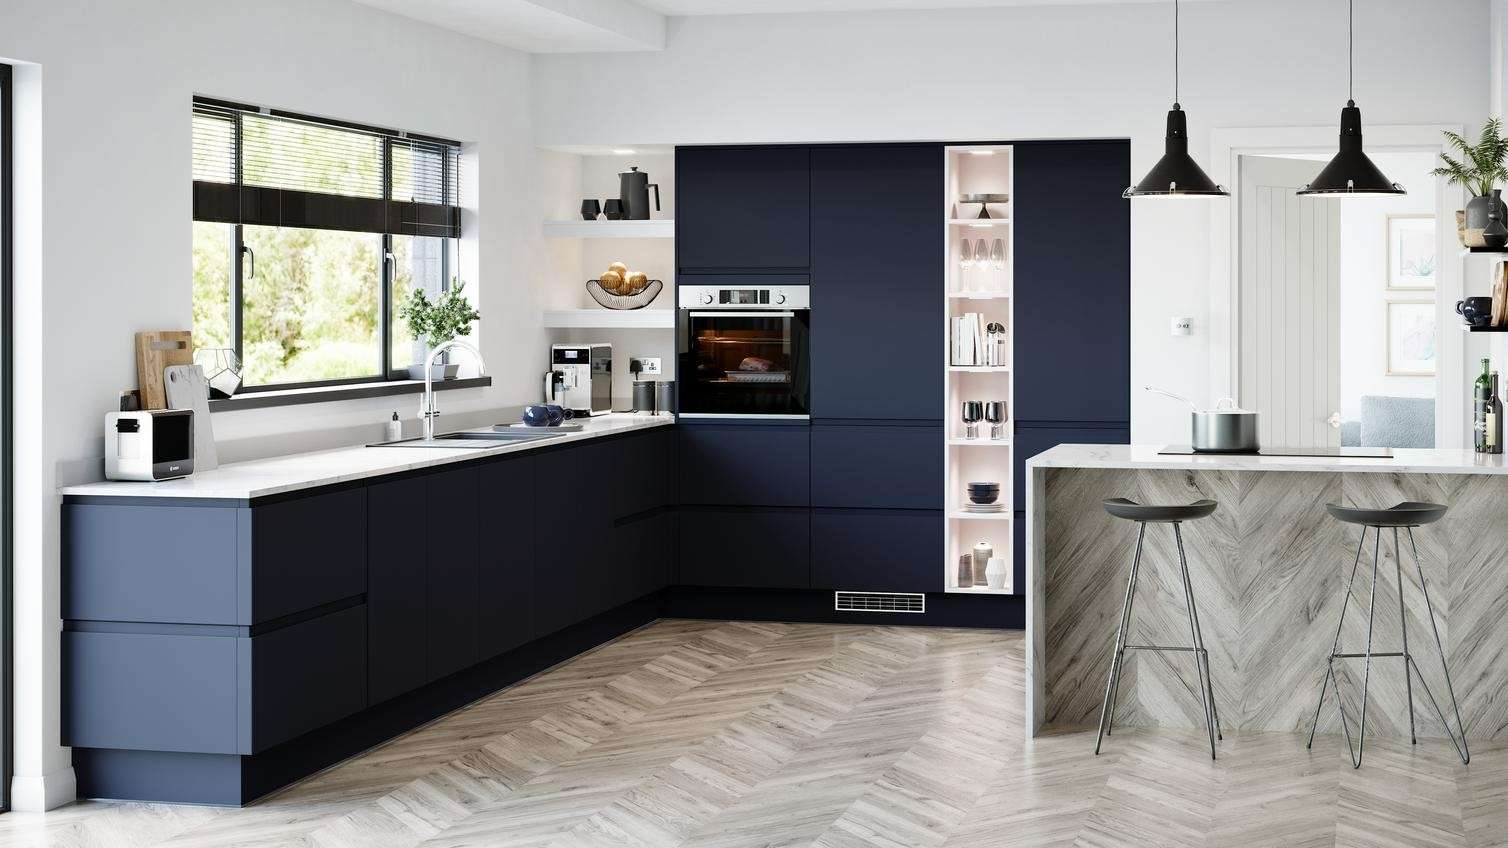 Tủ bếp màu đen xanh hiện đại và tiện nghi cho bạn